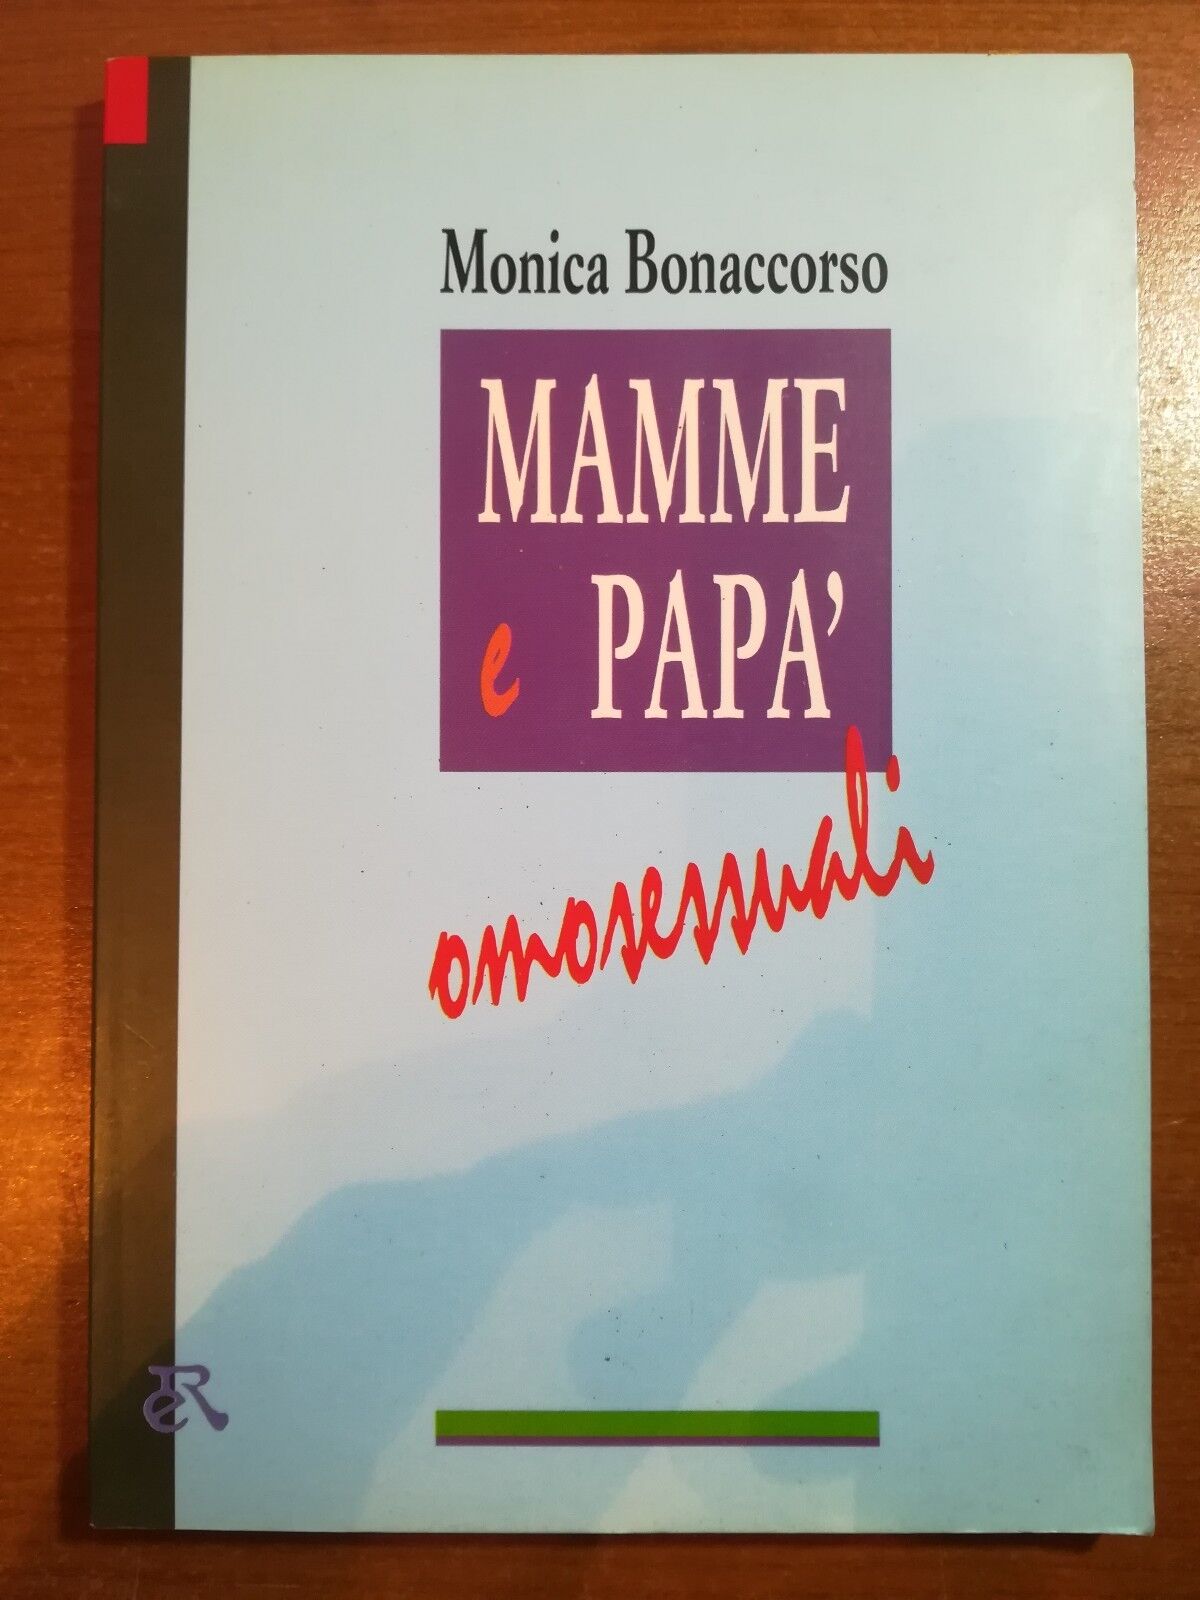 Mamme e pap? omosessuali - Monica Bonaccorso - Editori Riuniti - 1994 - M